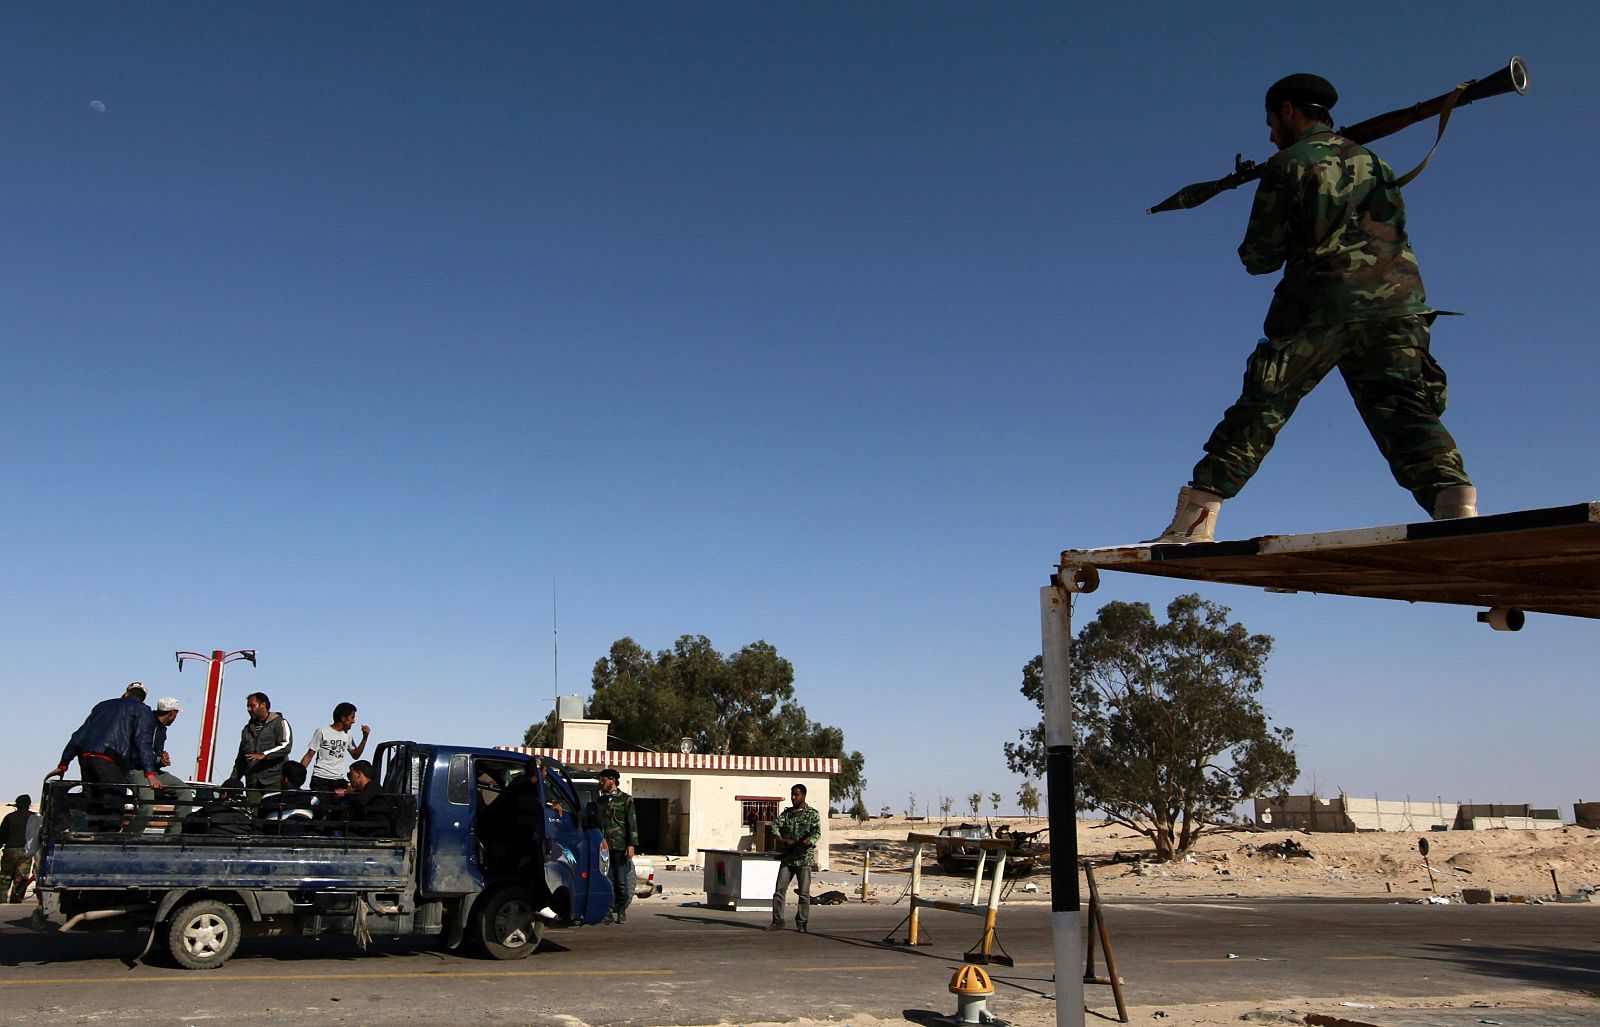 Un combatiente rebelde libio apunta  a un vehículo con su RPG (granada) un en un control de carretera en Zuwaytinah, unos 100 kilómetros de Bengasi